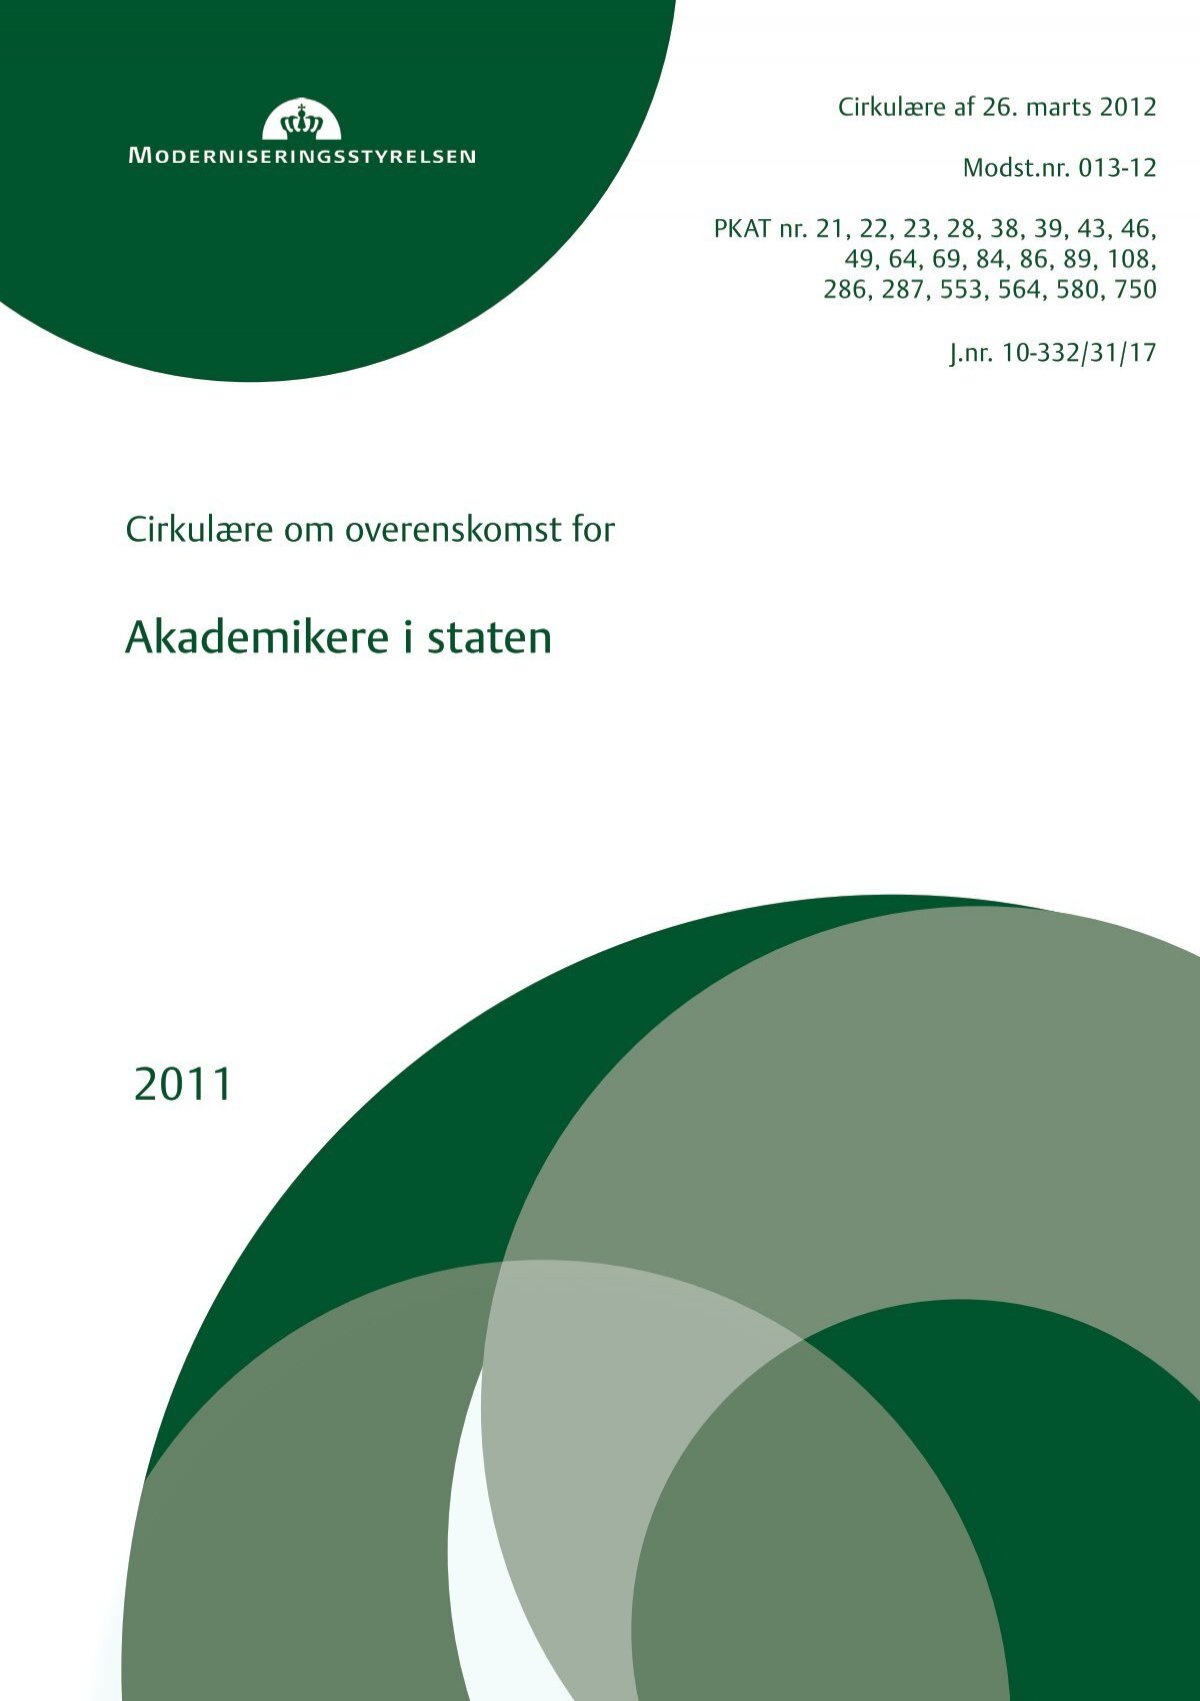 AC-fællesakademisk overenskomst OK11 ny version marts 2012